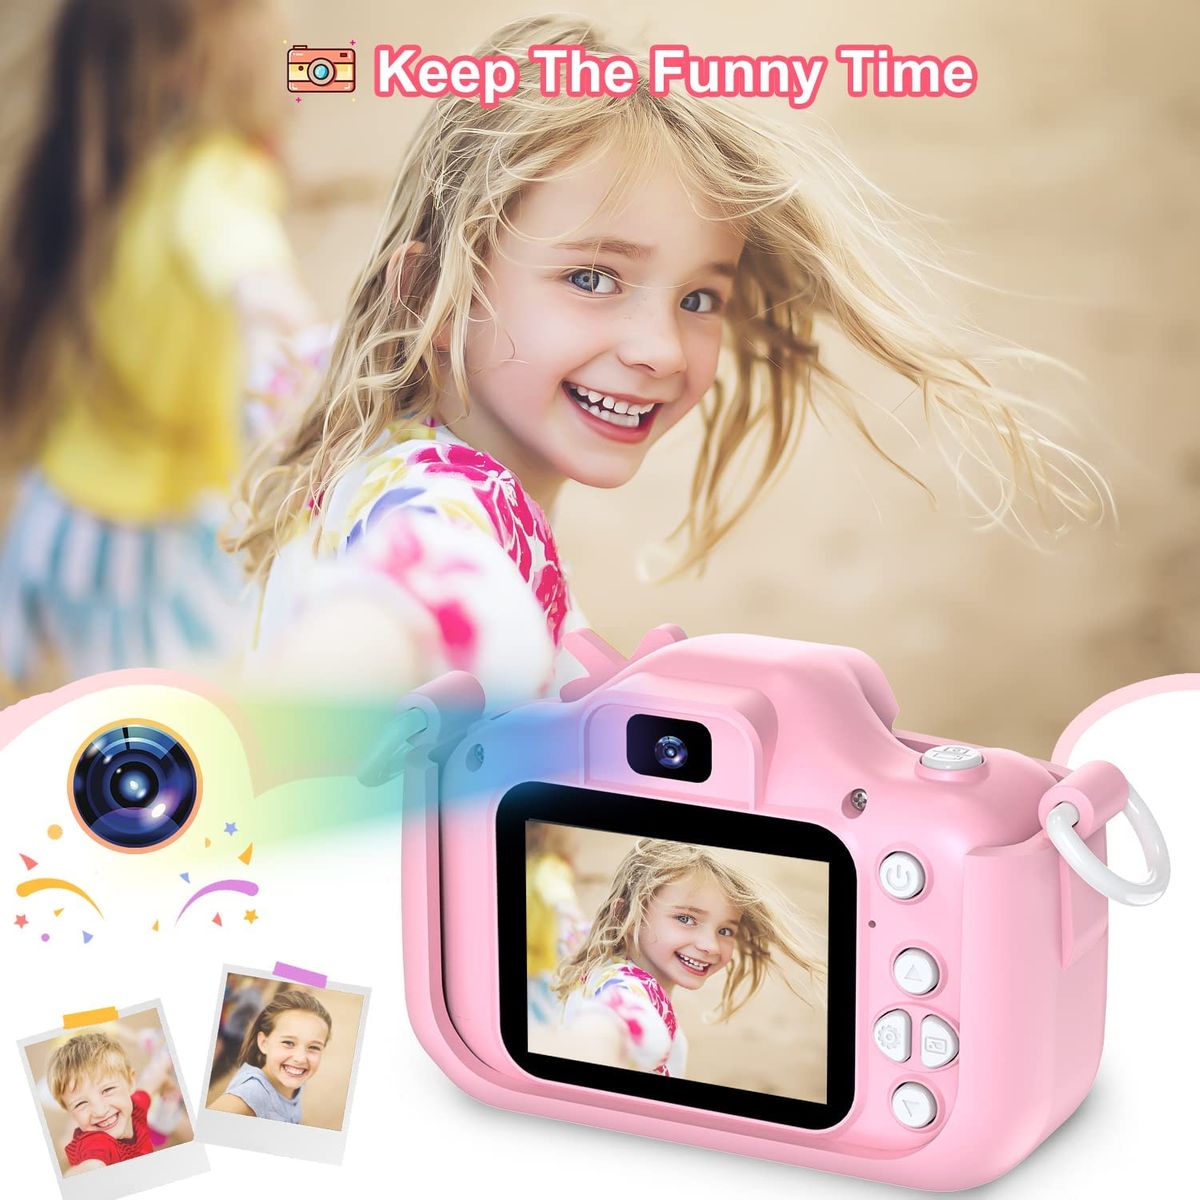 Dwfit Kinder Kamera, Digitalkamera für Kinder,Selfie 1080P HD-Videospielzeugkamera mit 32G Karte,Geschenk für 3-12 jährige Mädchen und Jungen Pink-Unicorn